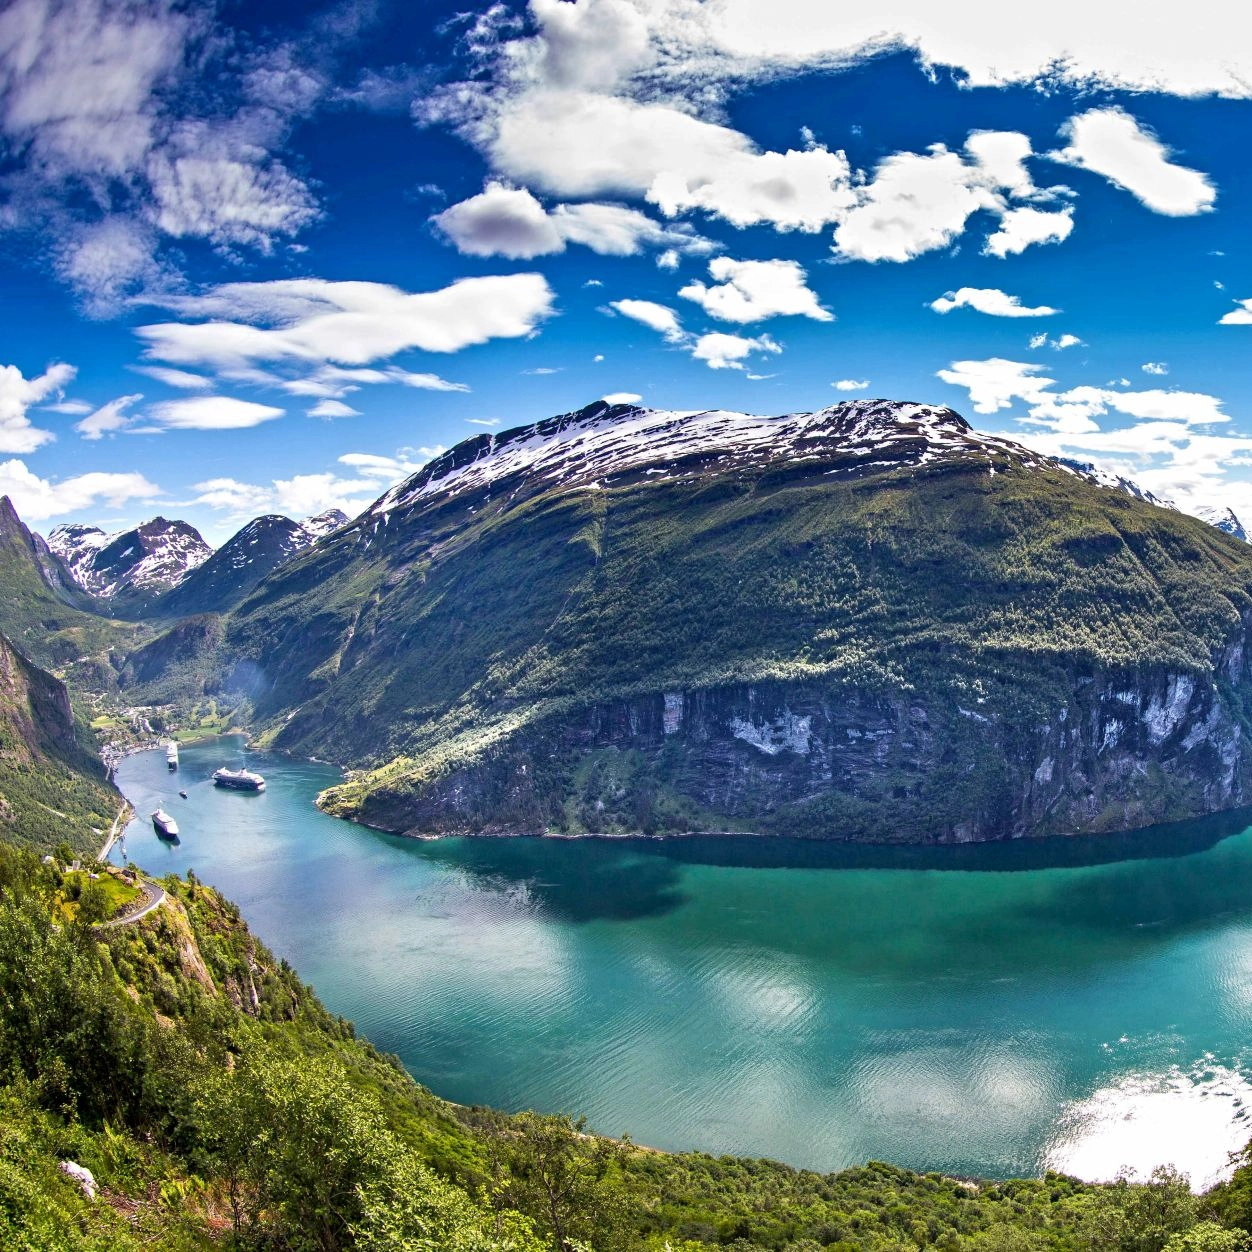 Der Geirangerfjord - Geiranger, Norwegen